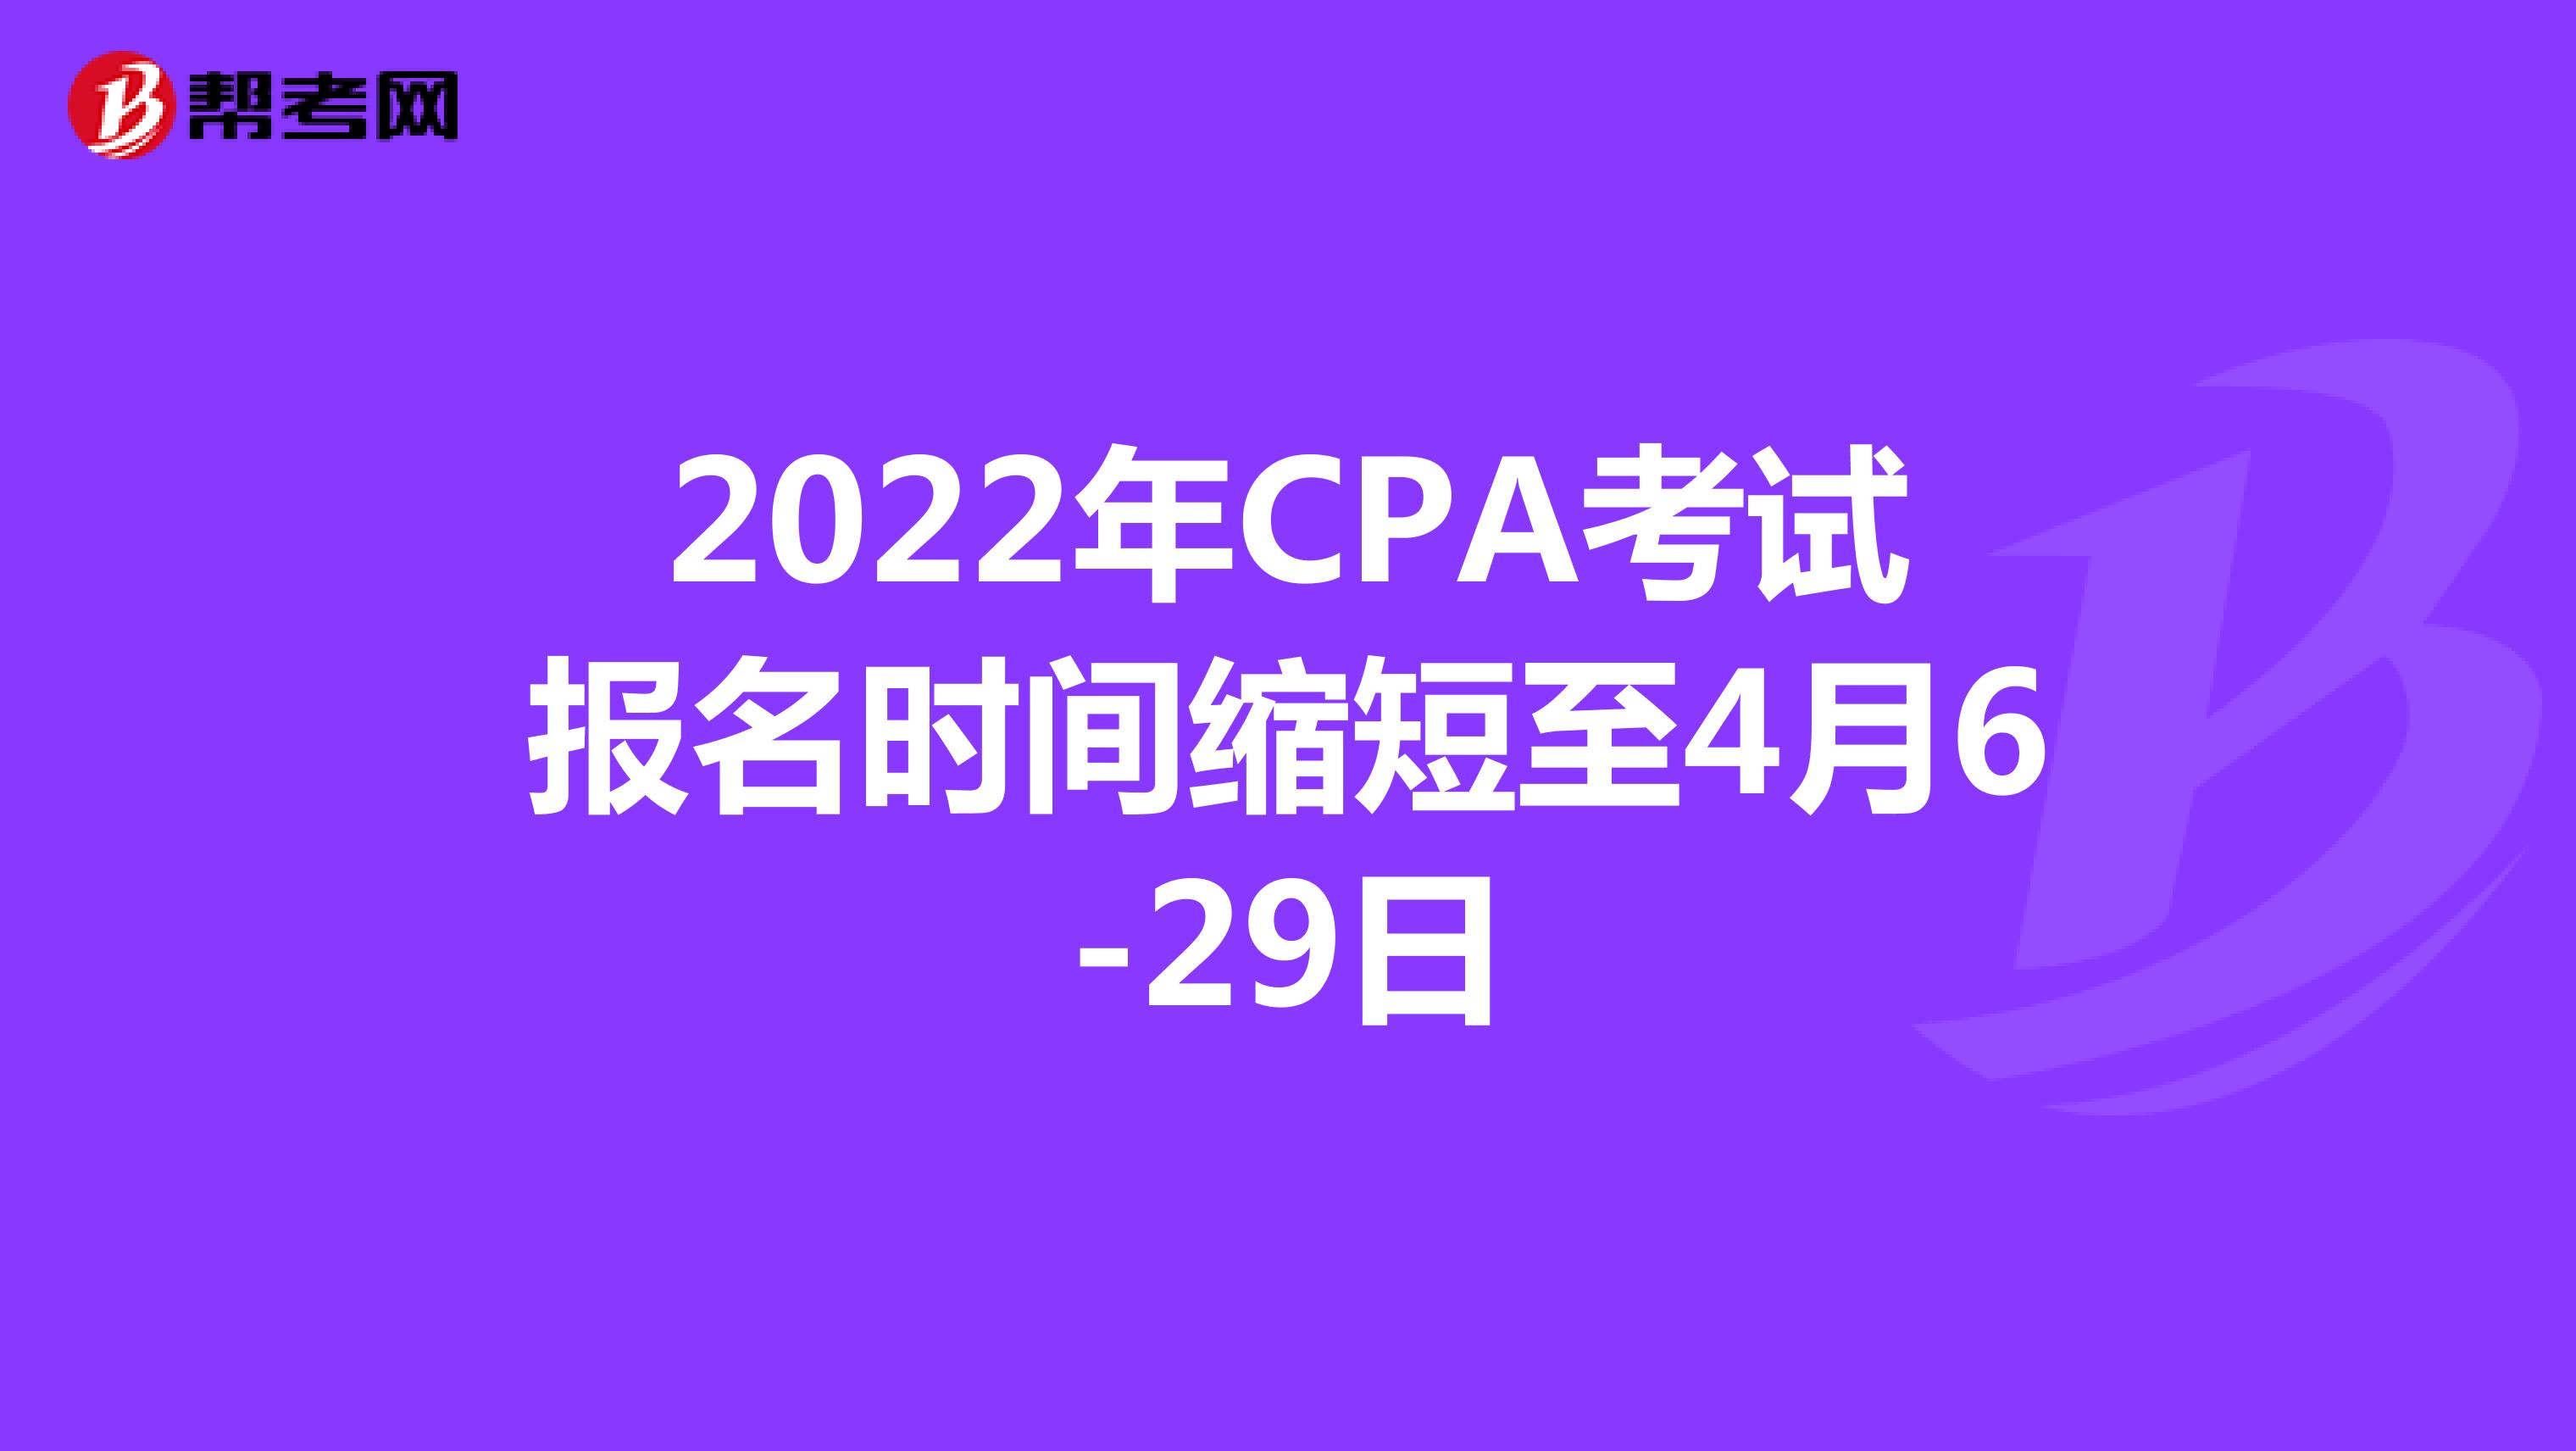 2022年CPA考试报名时间缩短至4月6-29日